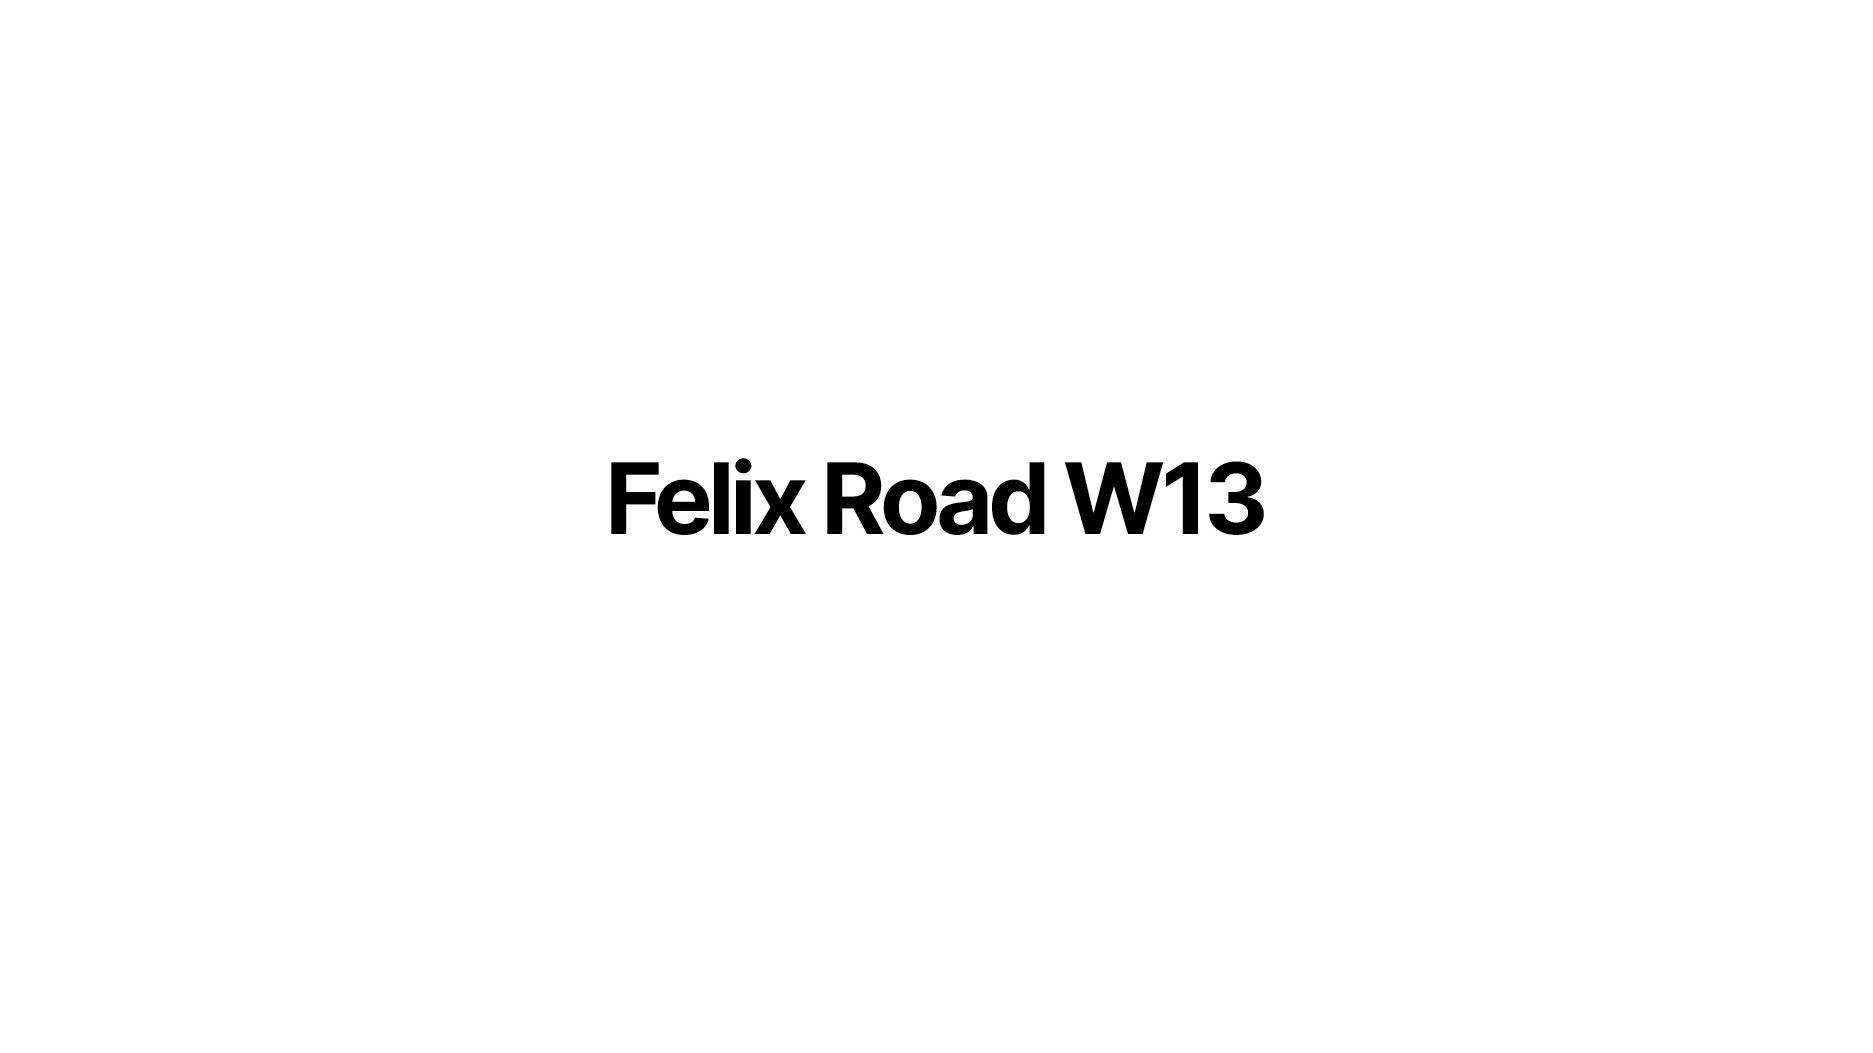 Felix Road development of 23 new homes in West Ealing, London W13